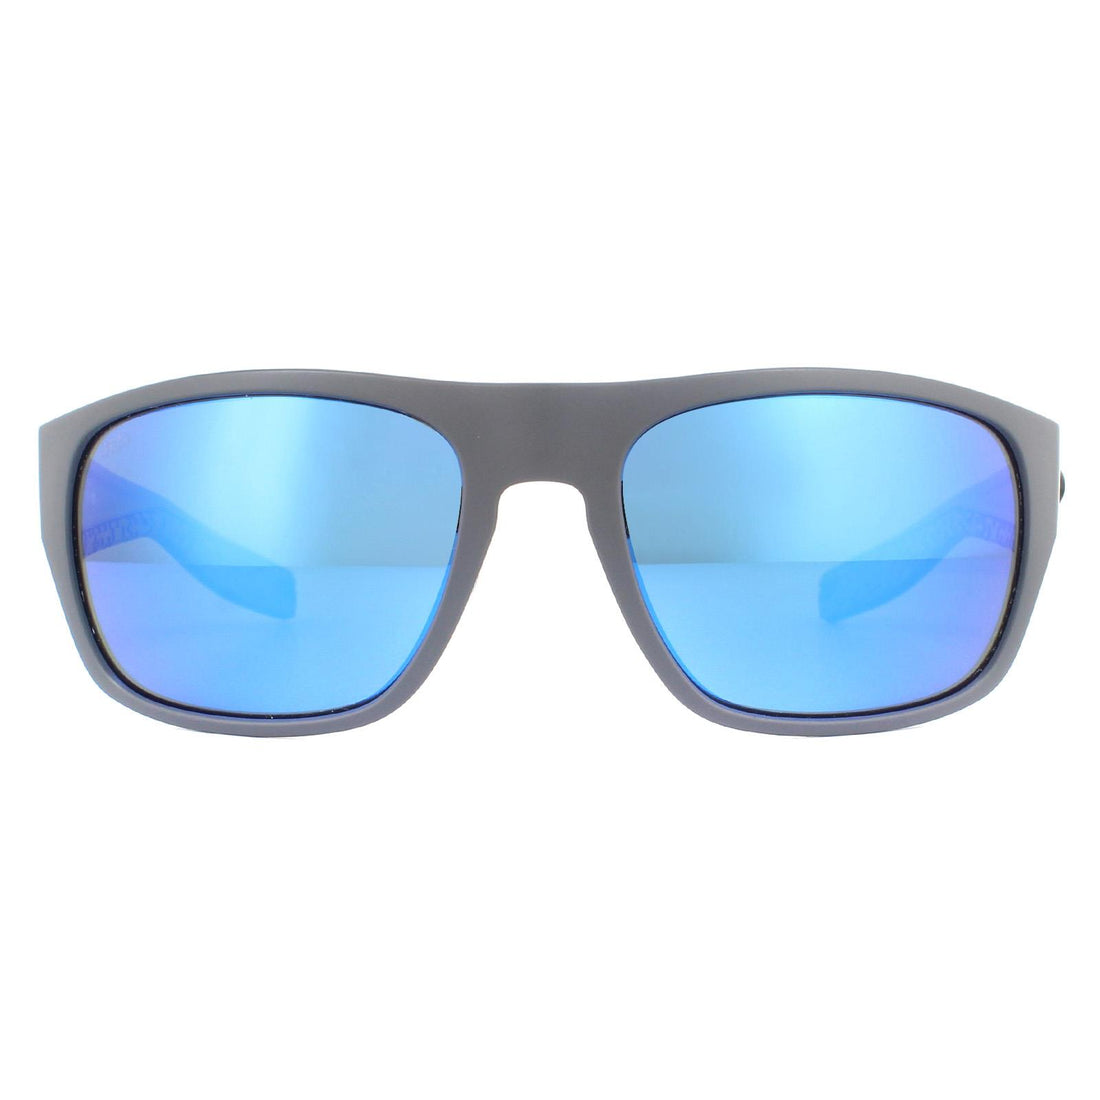 Costa Del Mar Tico Sunglasses Matte Grey Blue Mirror Polarized Glass